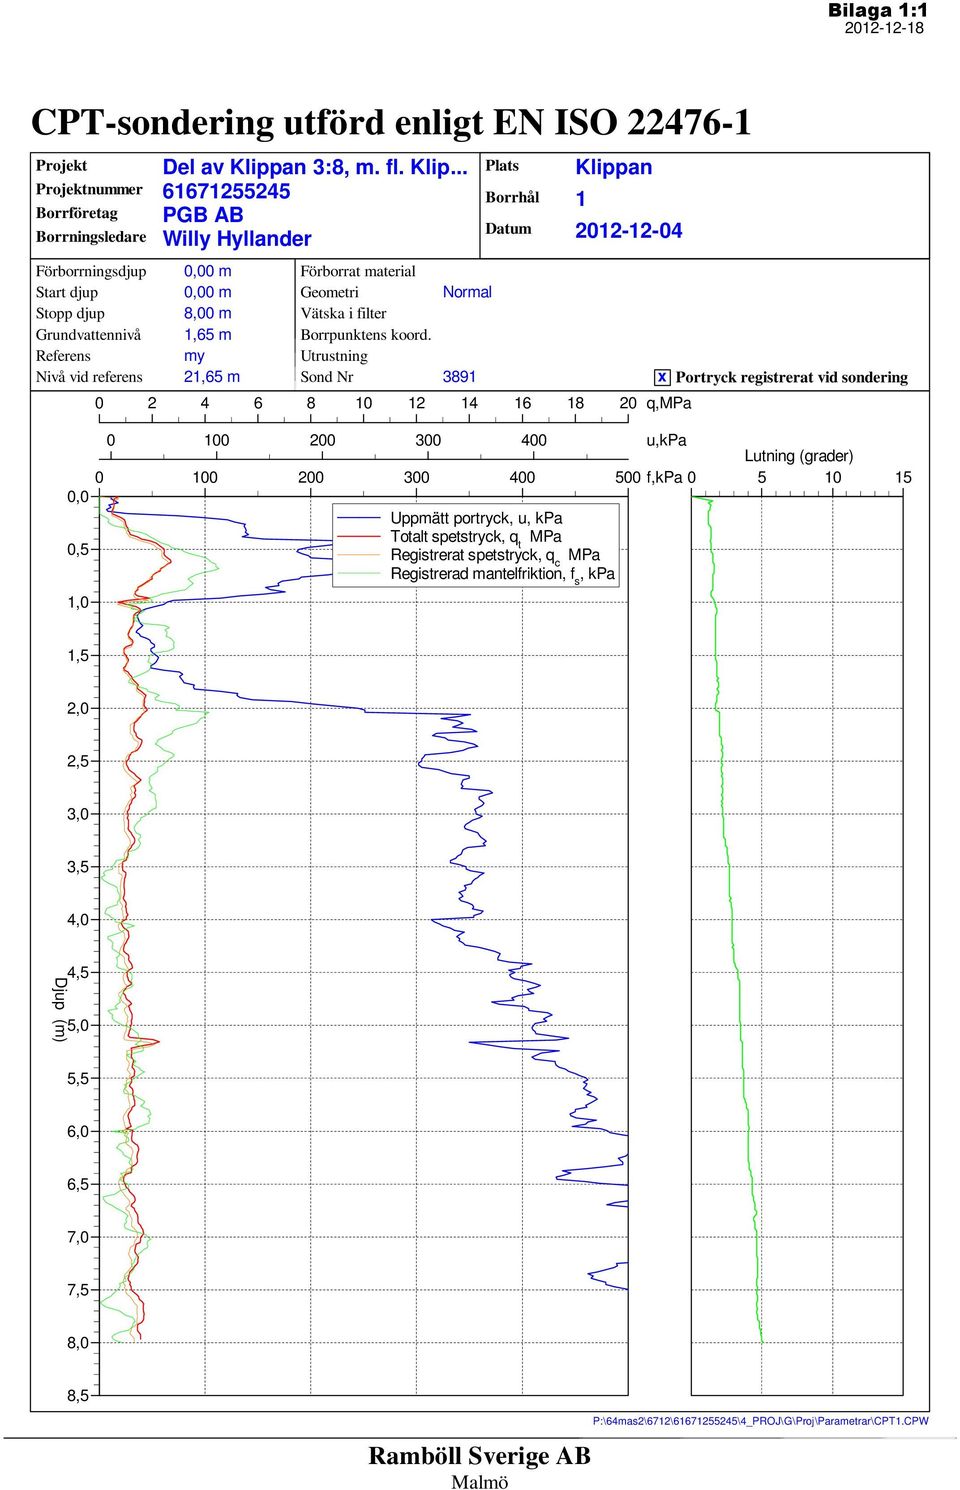 Utrustning Sond Nr Normal Plats Borrhål Datum Klippan 1 2012-12-04 x Portryck registrerat vid sondering 0 100 200 300 400 u,kpa Lutning (grader) 0 100 200 300 400 500 f,kpa 0 5 10 15 0,0 Uppmätt